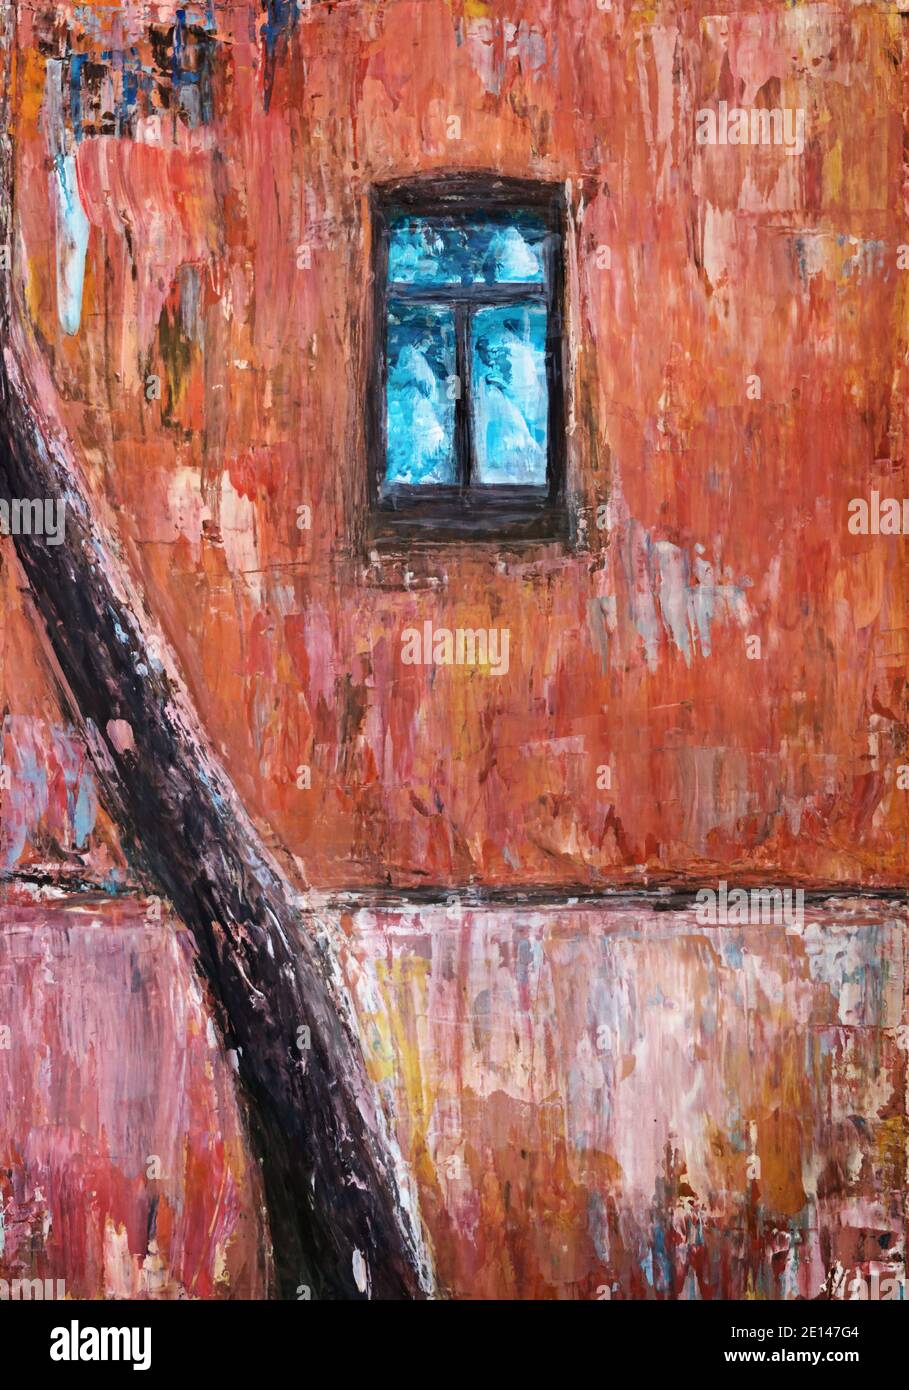 Mur, arbre, fenêtre. Peinture à la gouache sur carton Banque D'Images